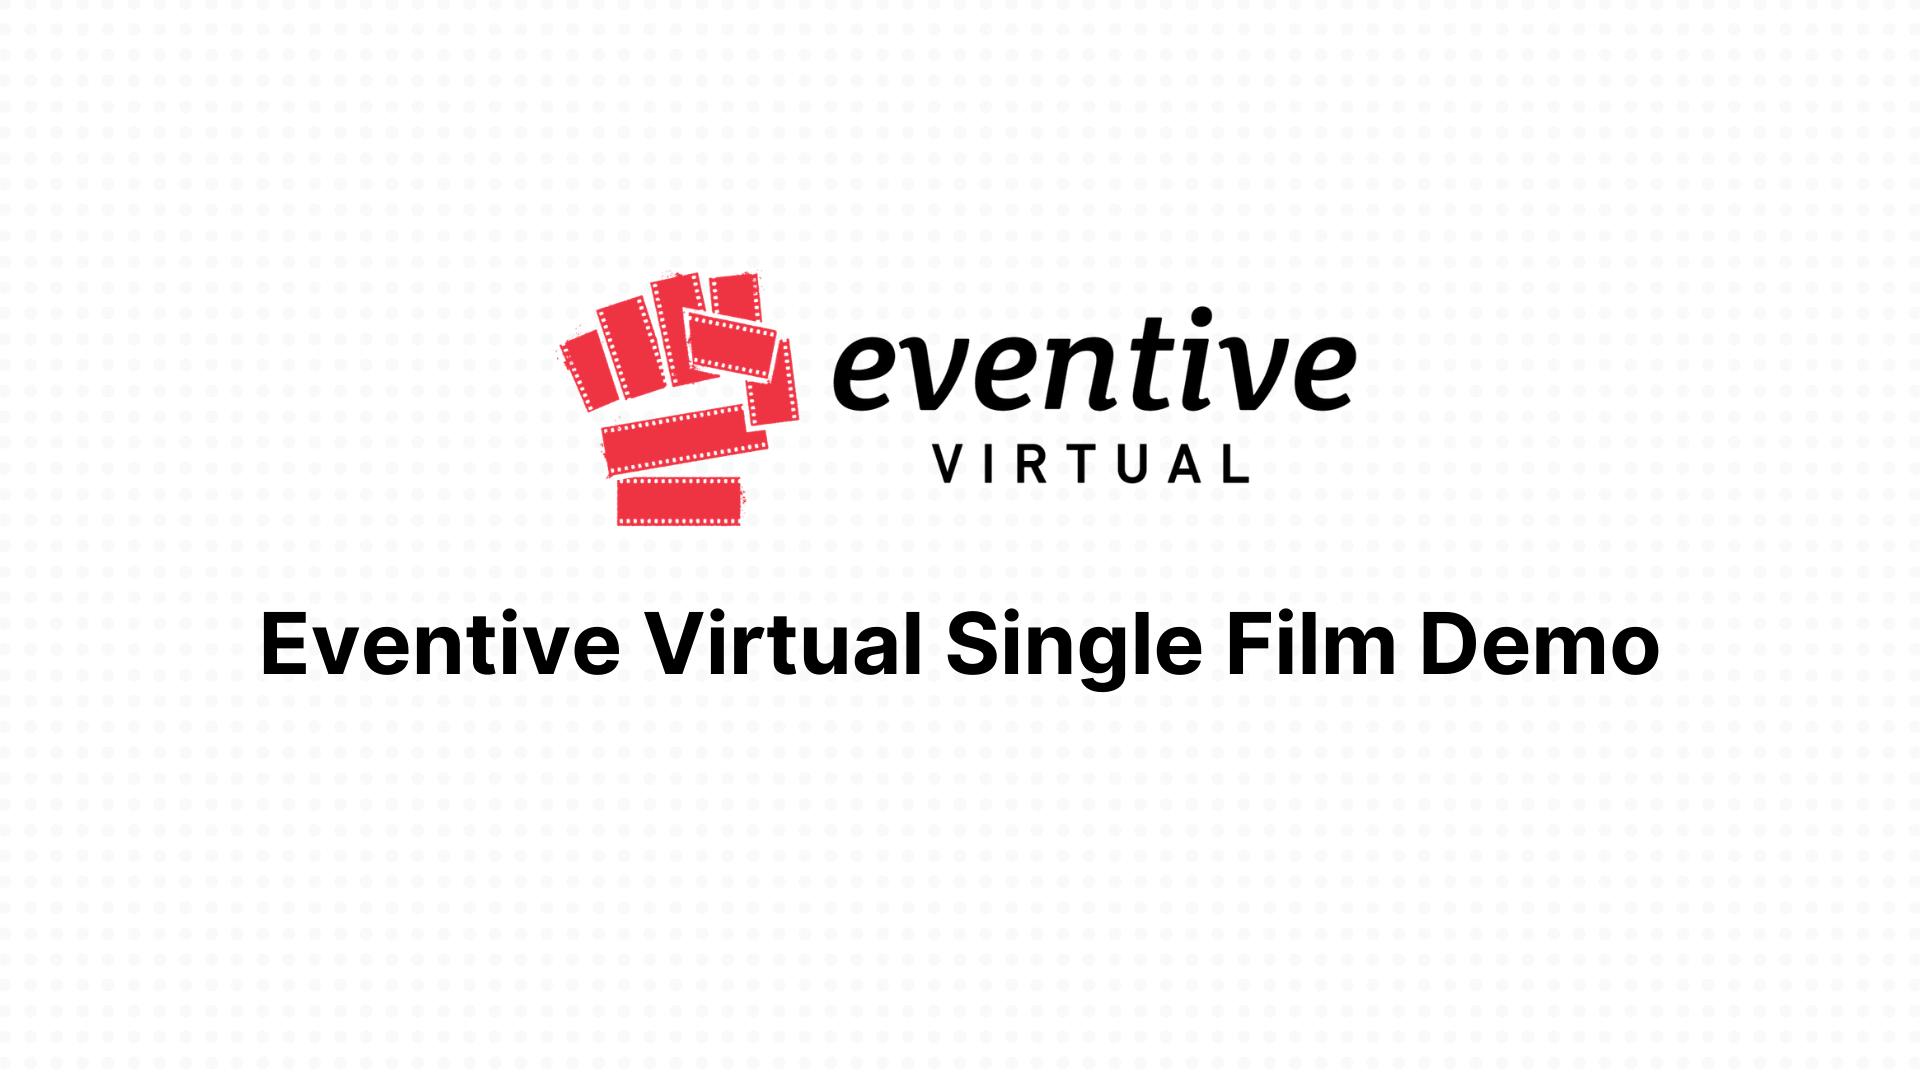 Eventive Virtual Single Film Demo